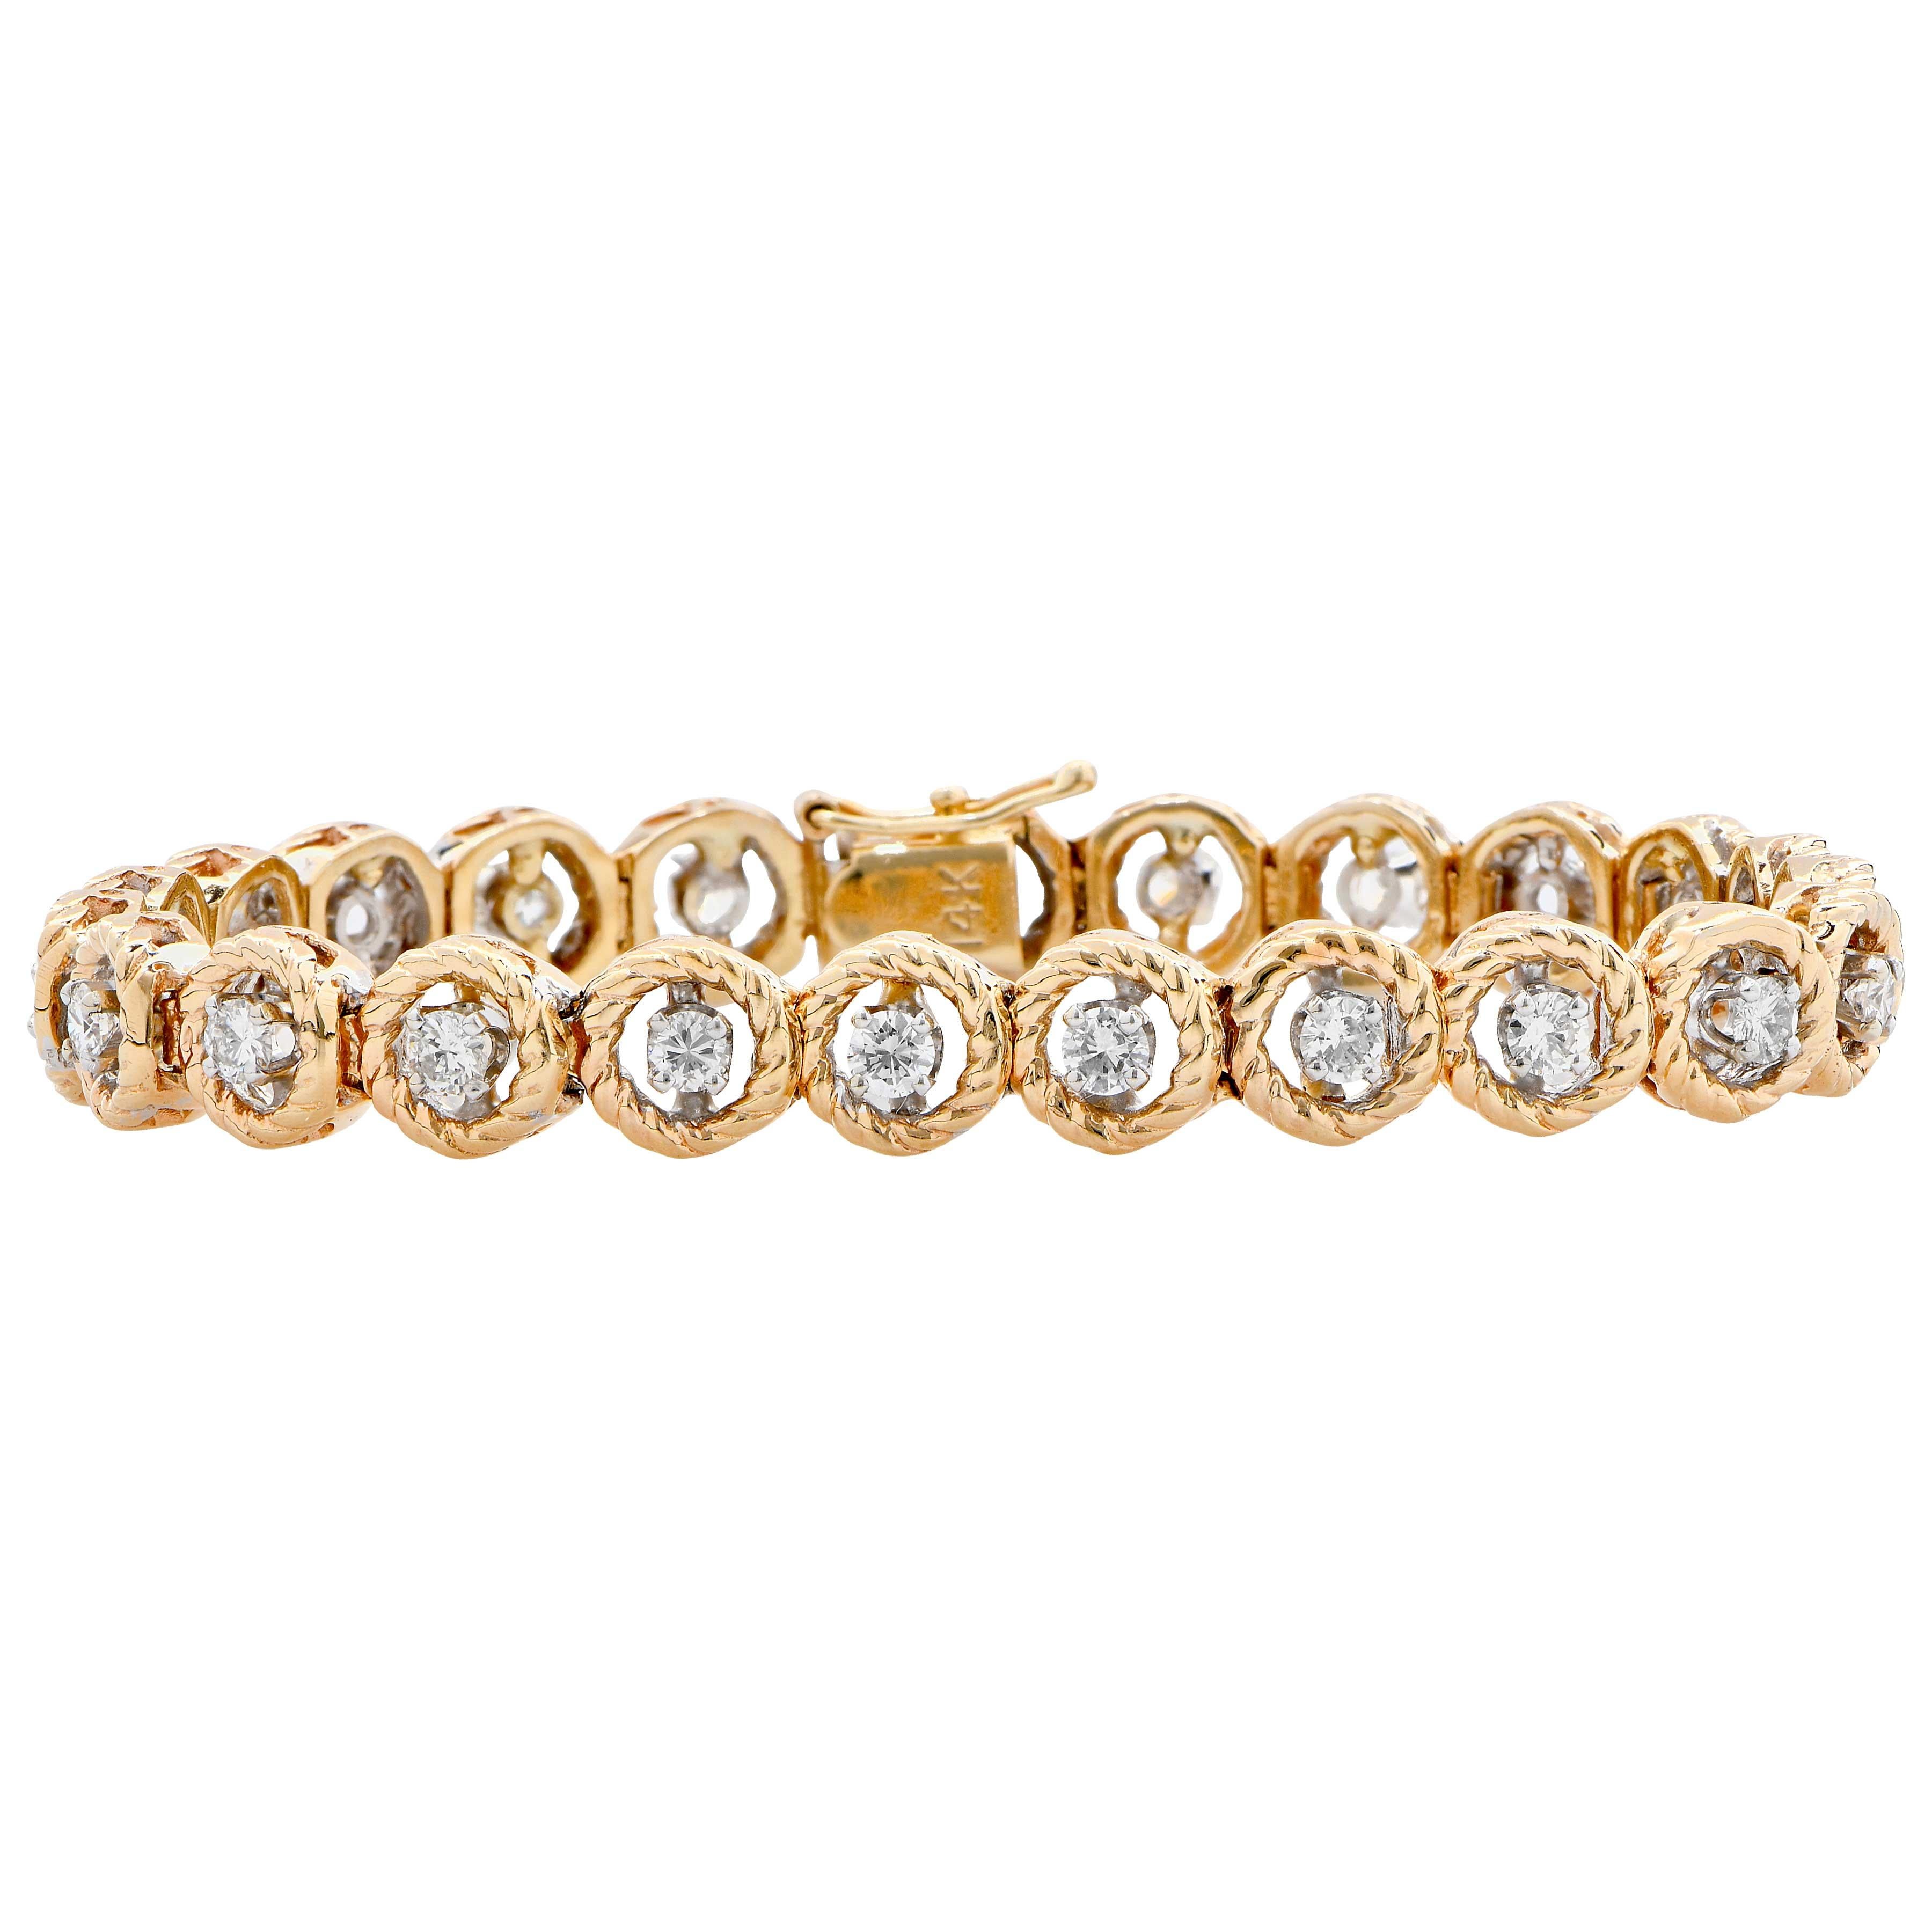 Modern 2.3 Carat Diamond Bracelet Set in 14 Karat Yellow and White Gold